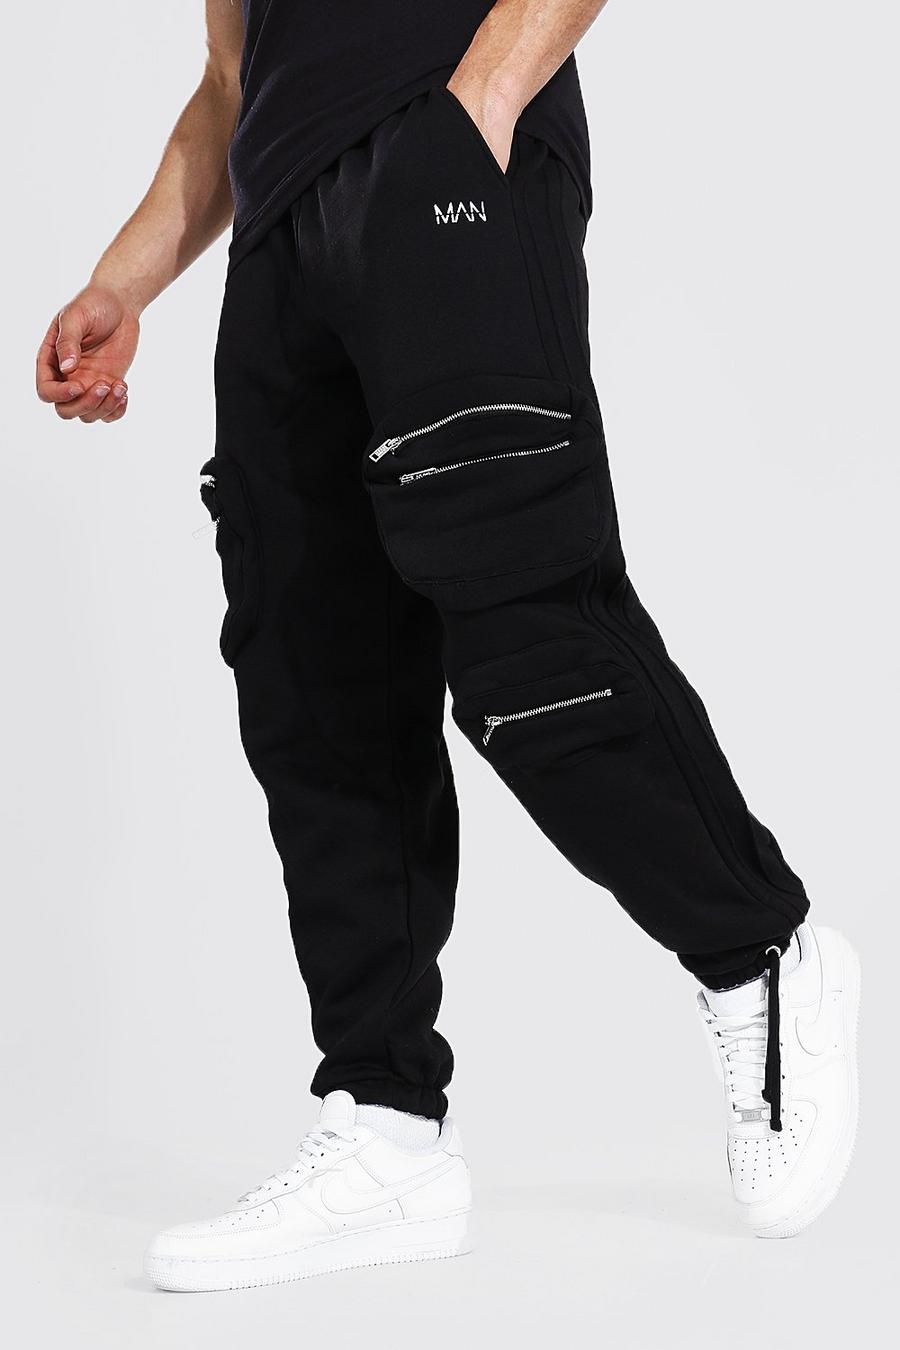 שחור מכנסי ריצה דגמ"ח אוברסייז בסגנון שימושי עם קפל image number 1